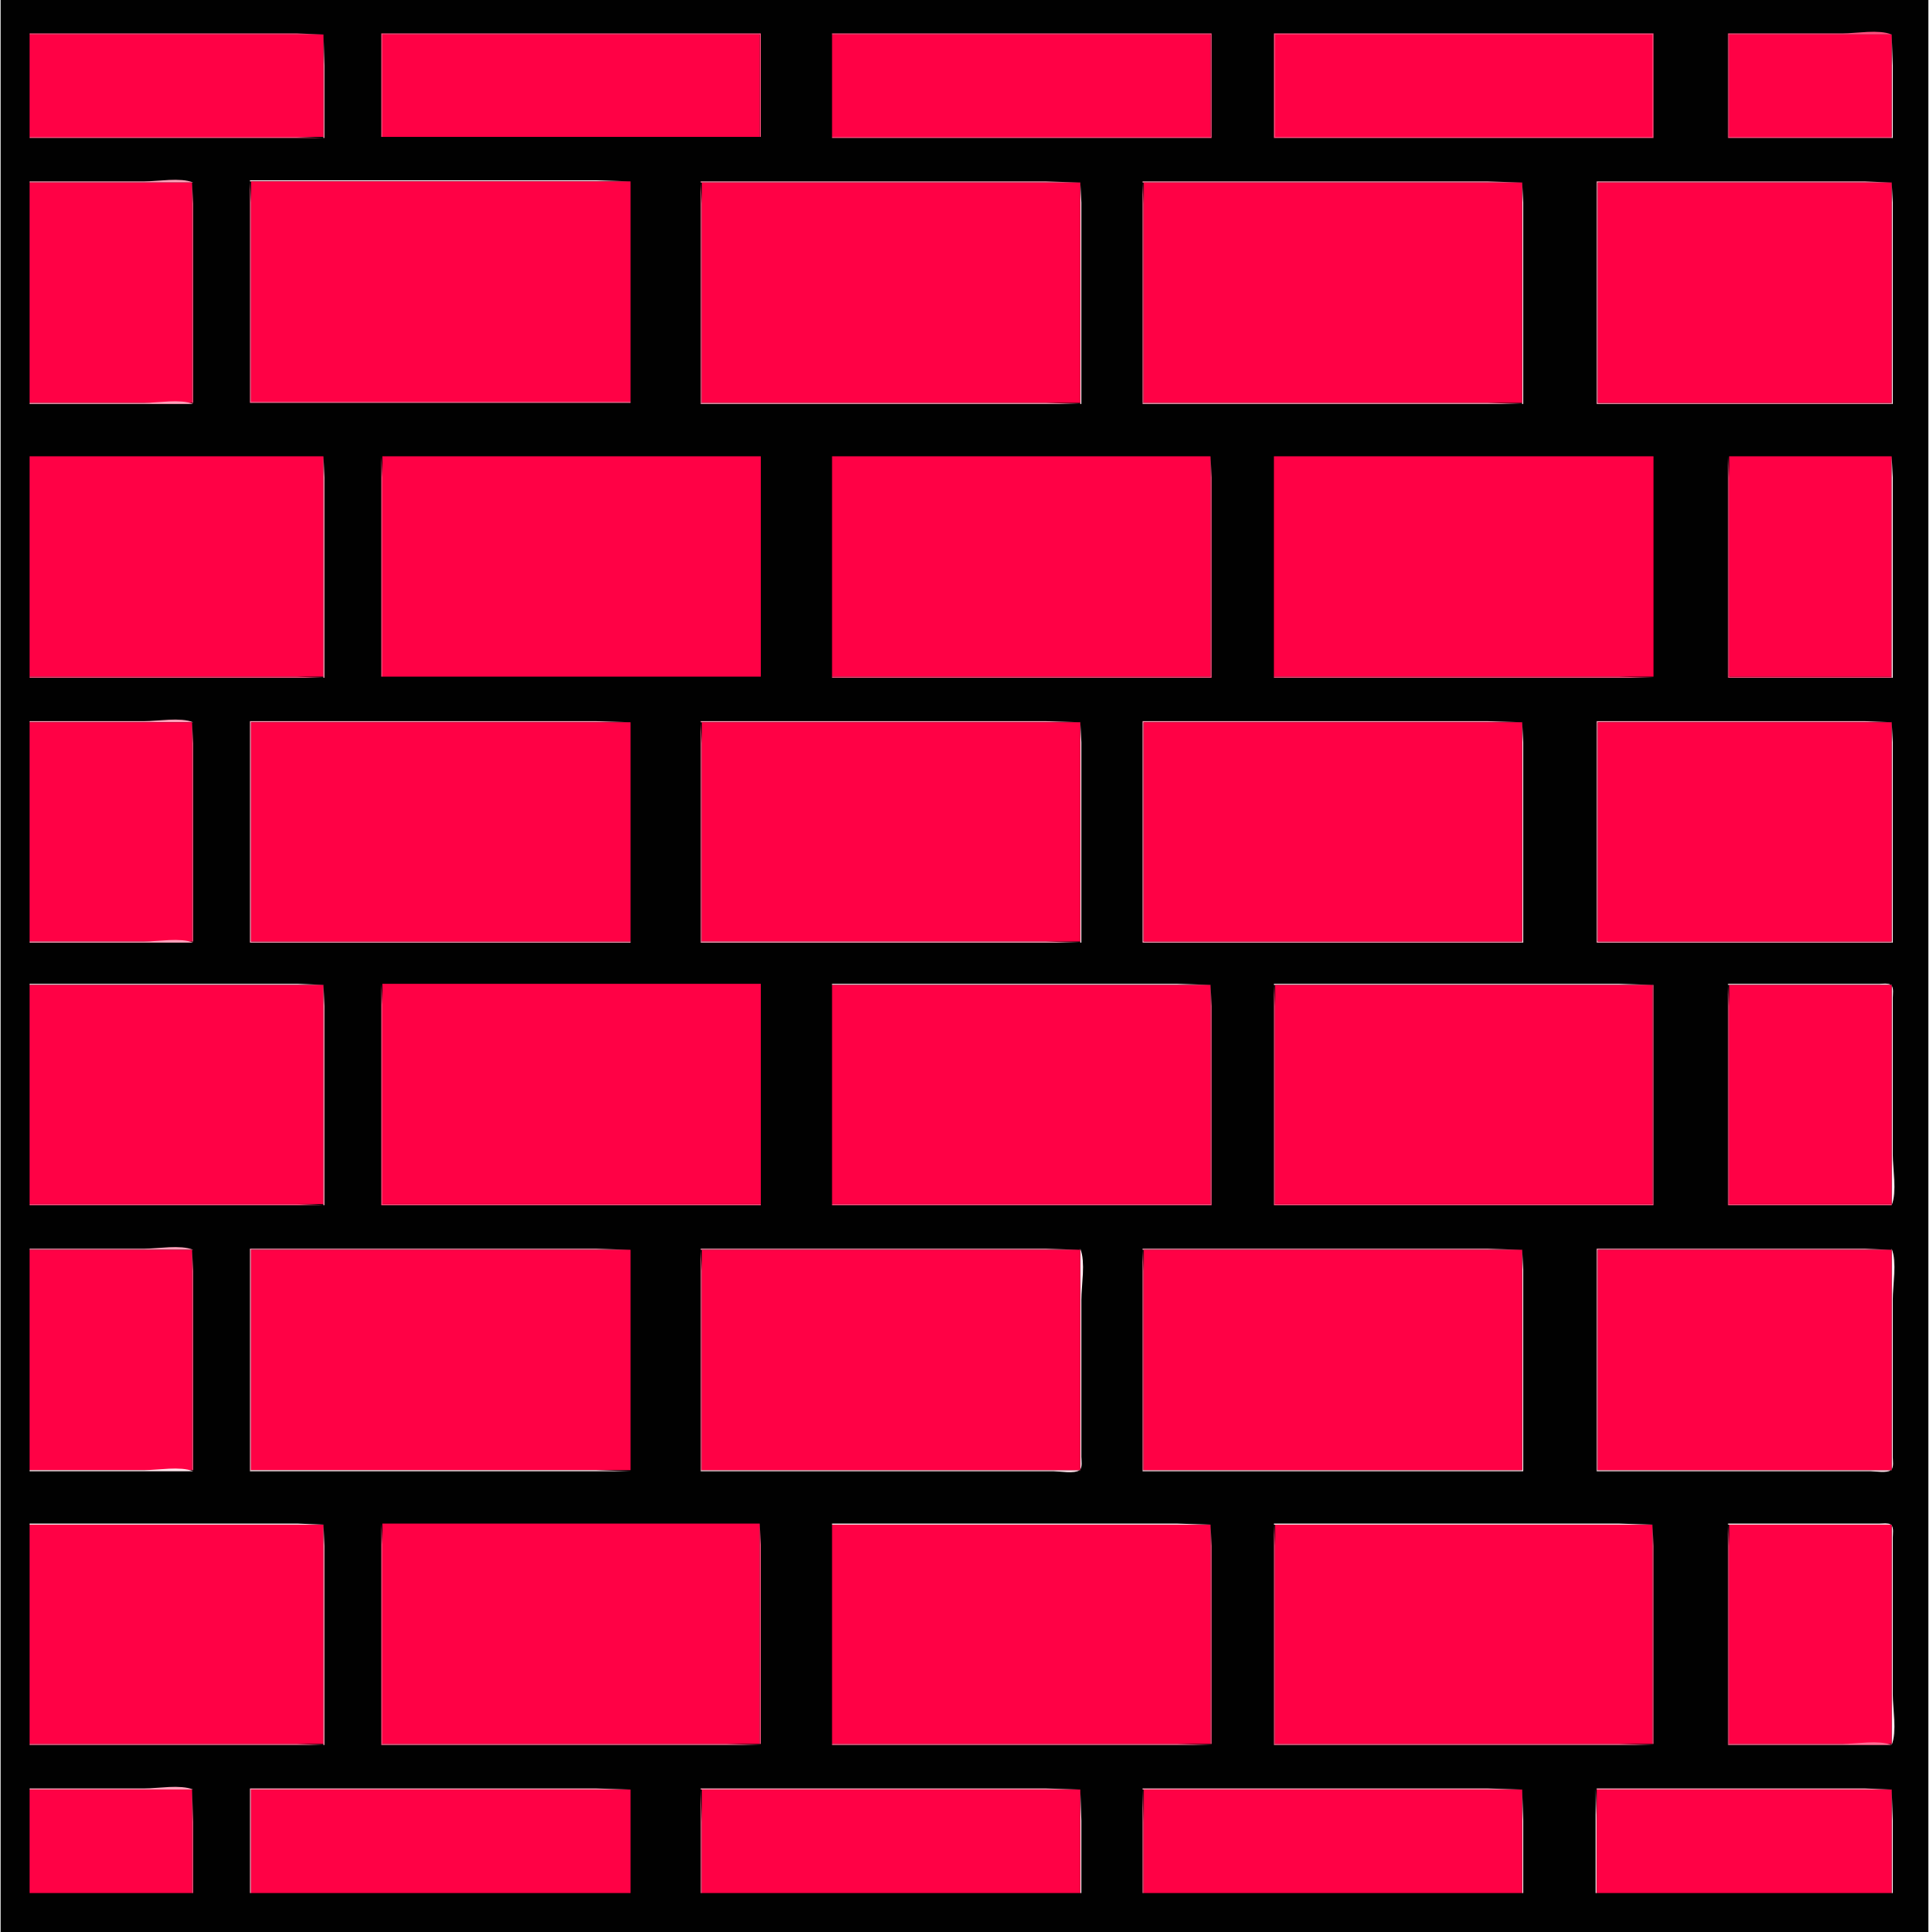 Free Brick Wall Cliparts Download Free Brick Wall Cliparts png images